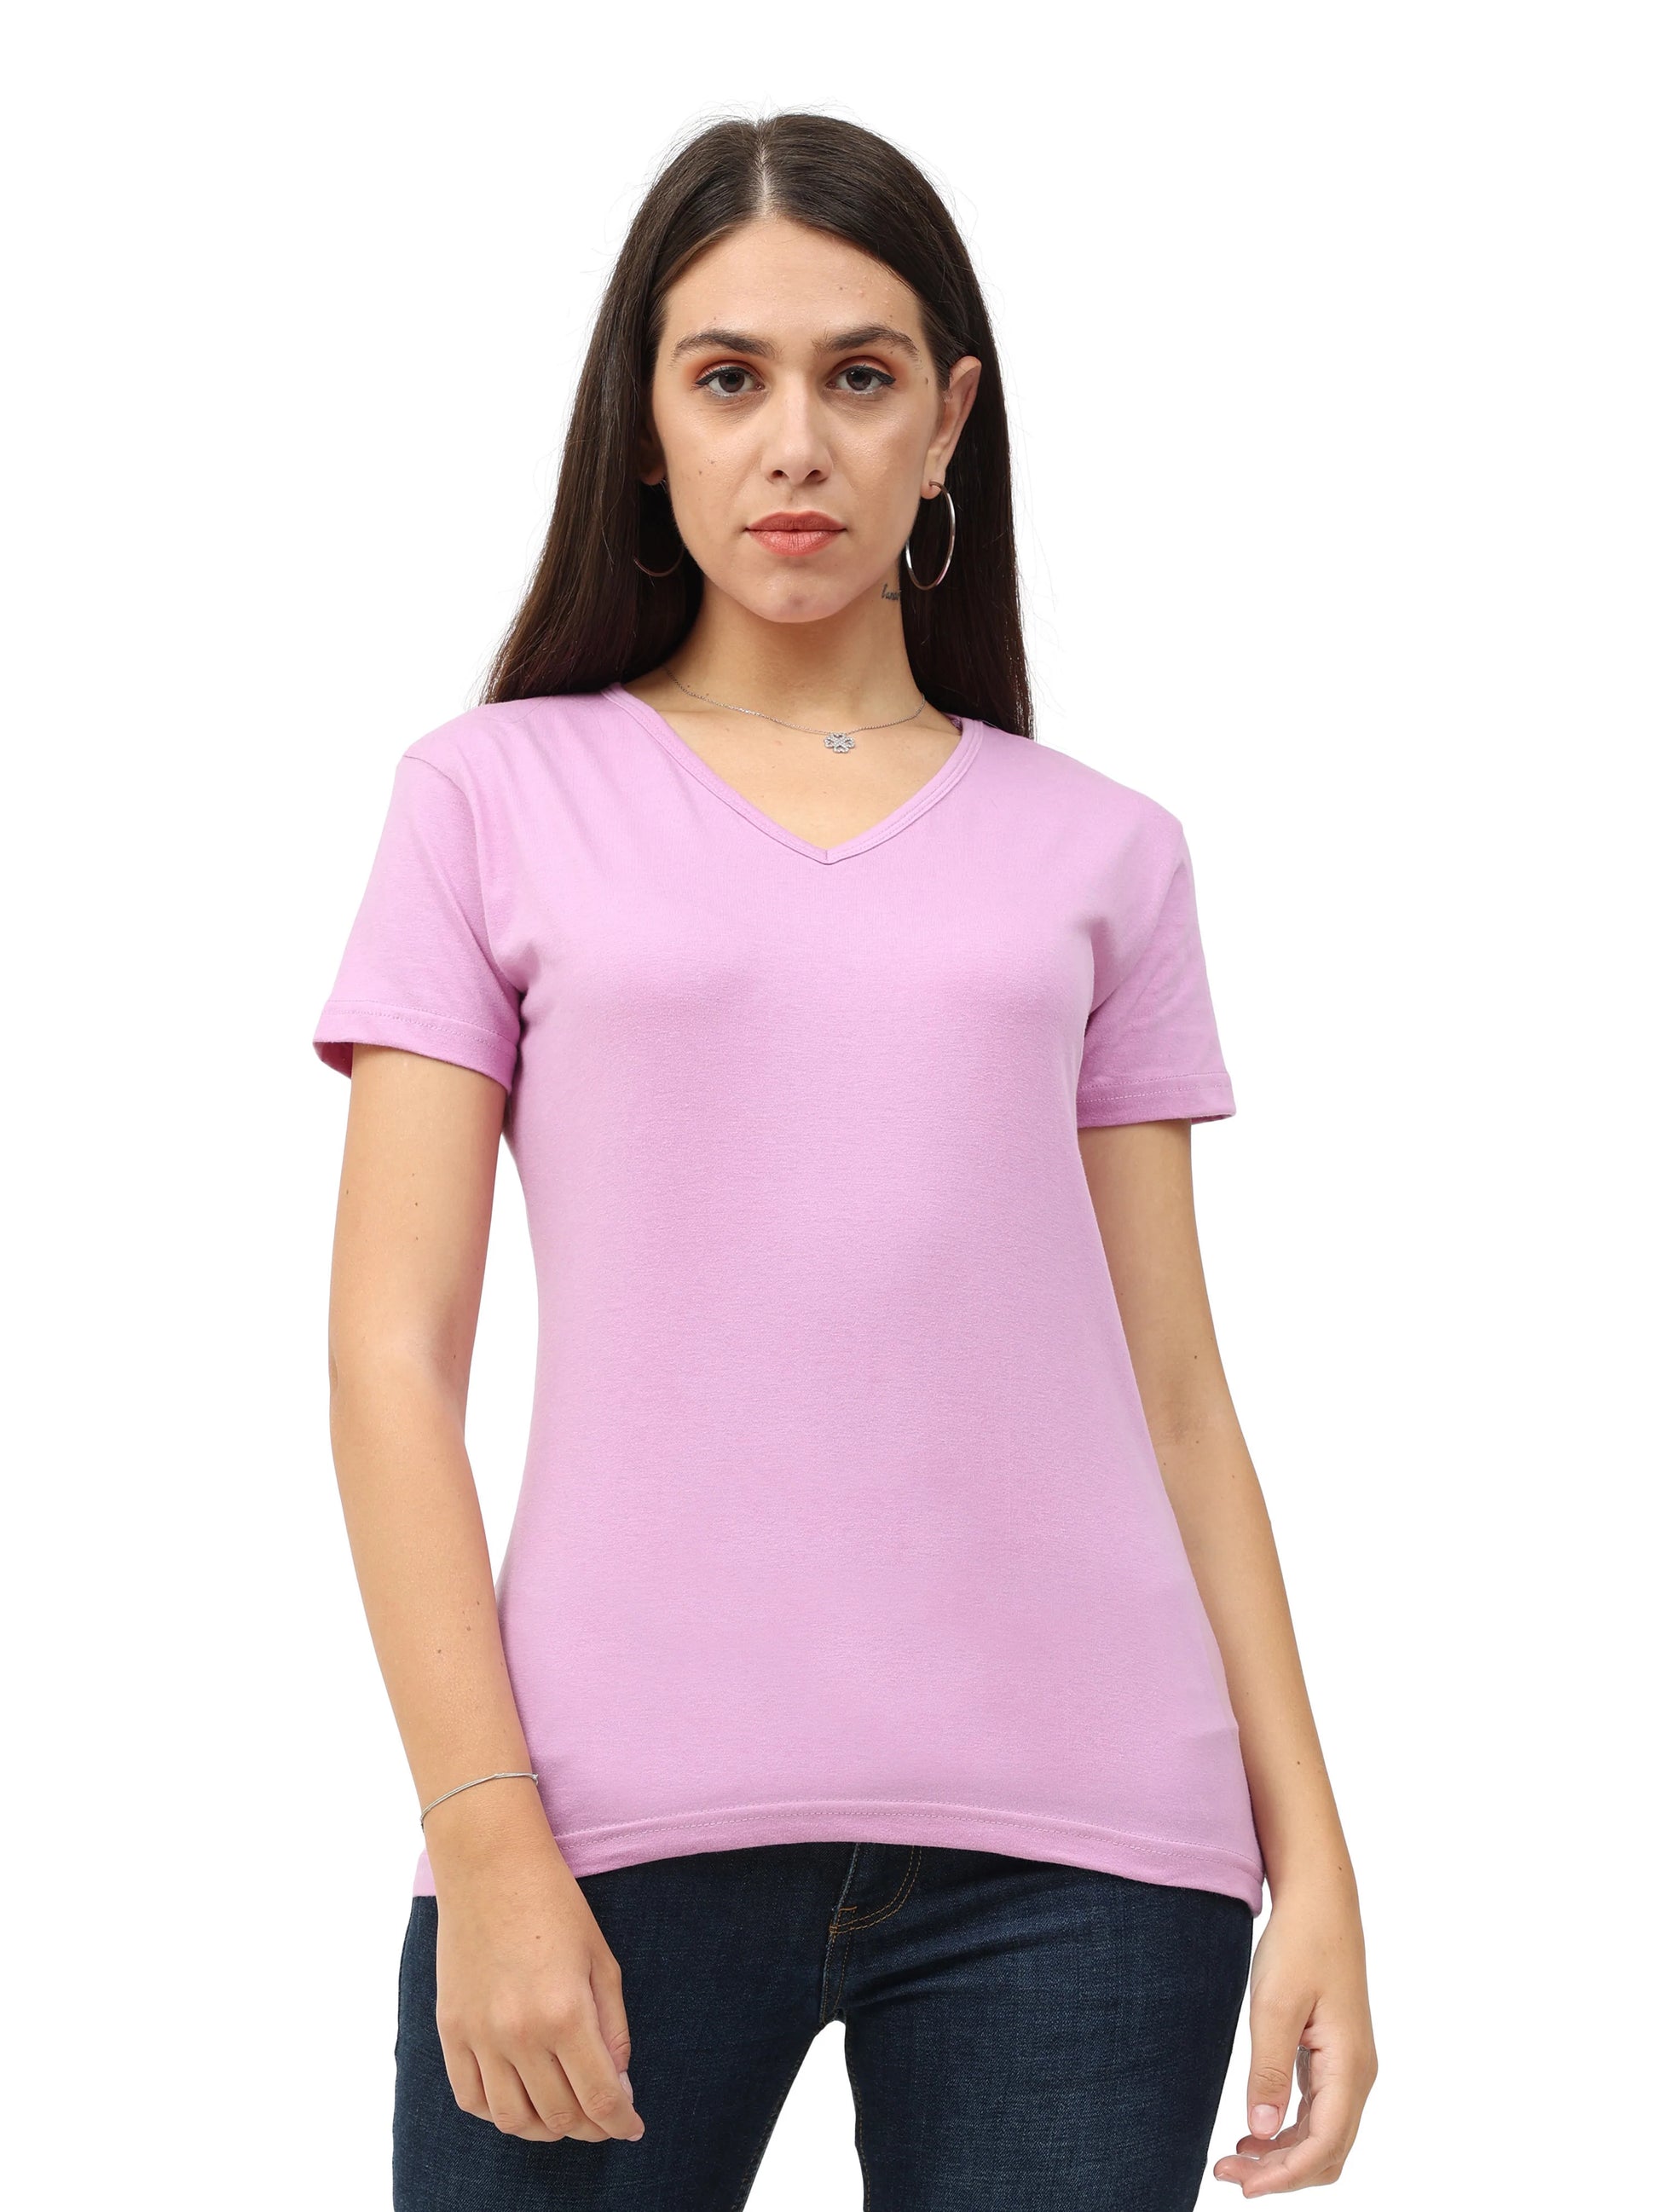 Women's Cotton Plain V Neck Half Sleeve Lavender Color T-Shirt